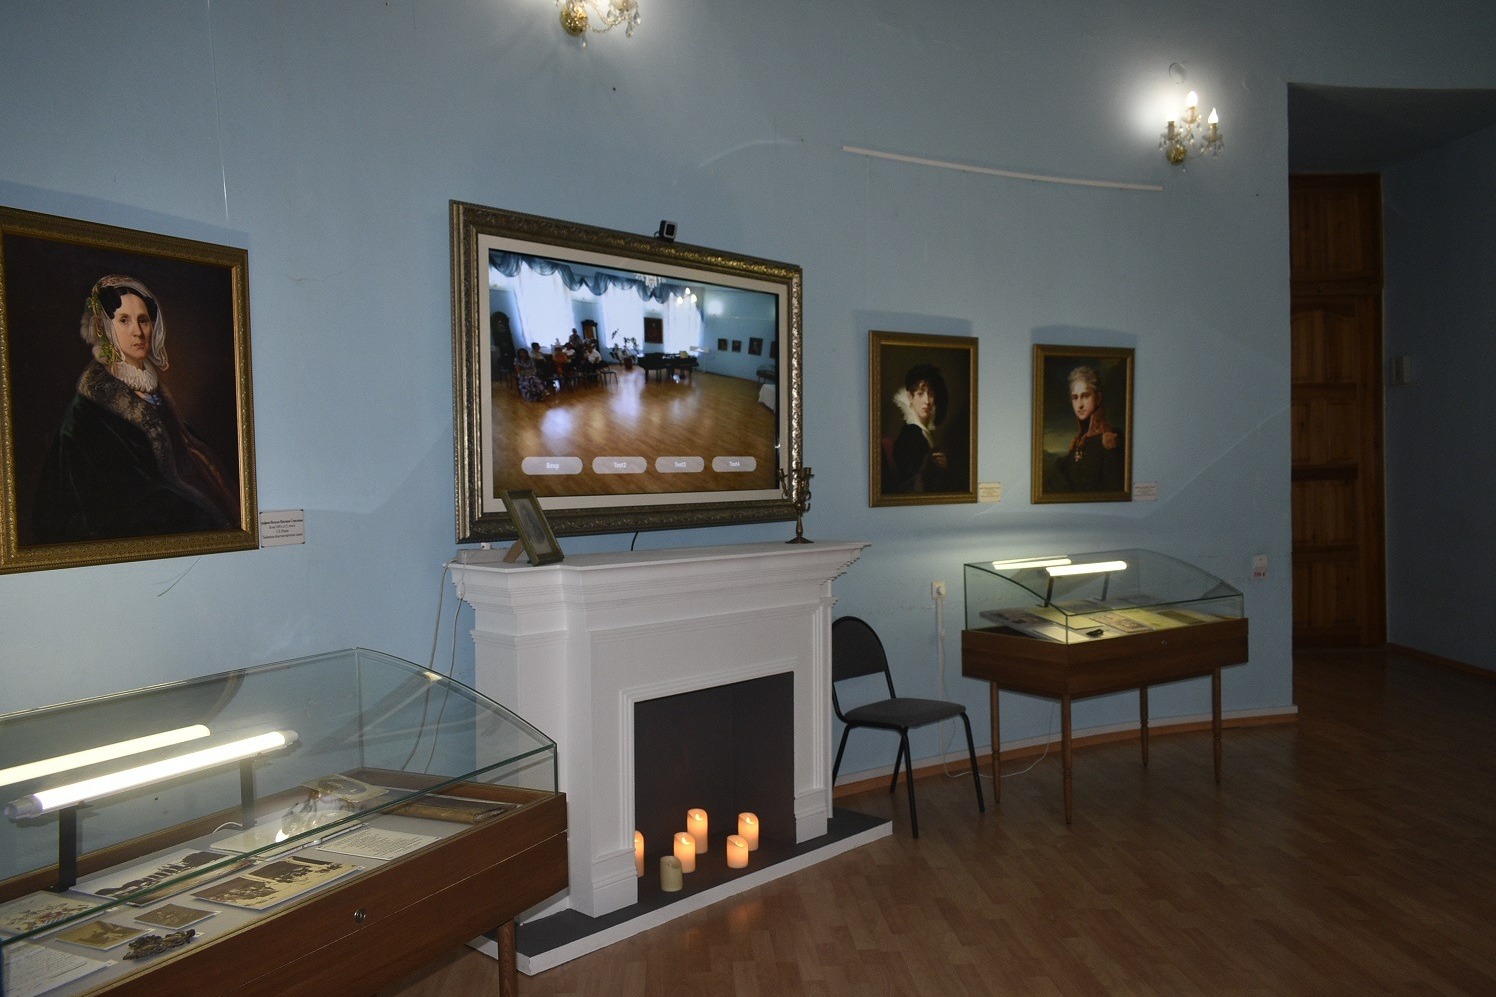 Интерактивное телезеркало в круглом зале Знаменского музея